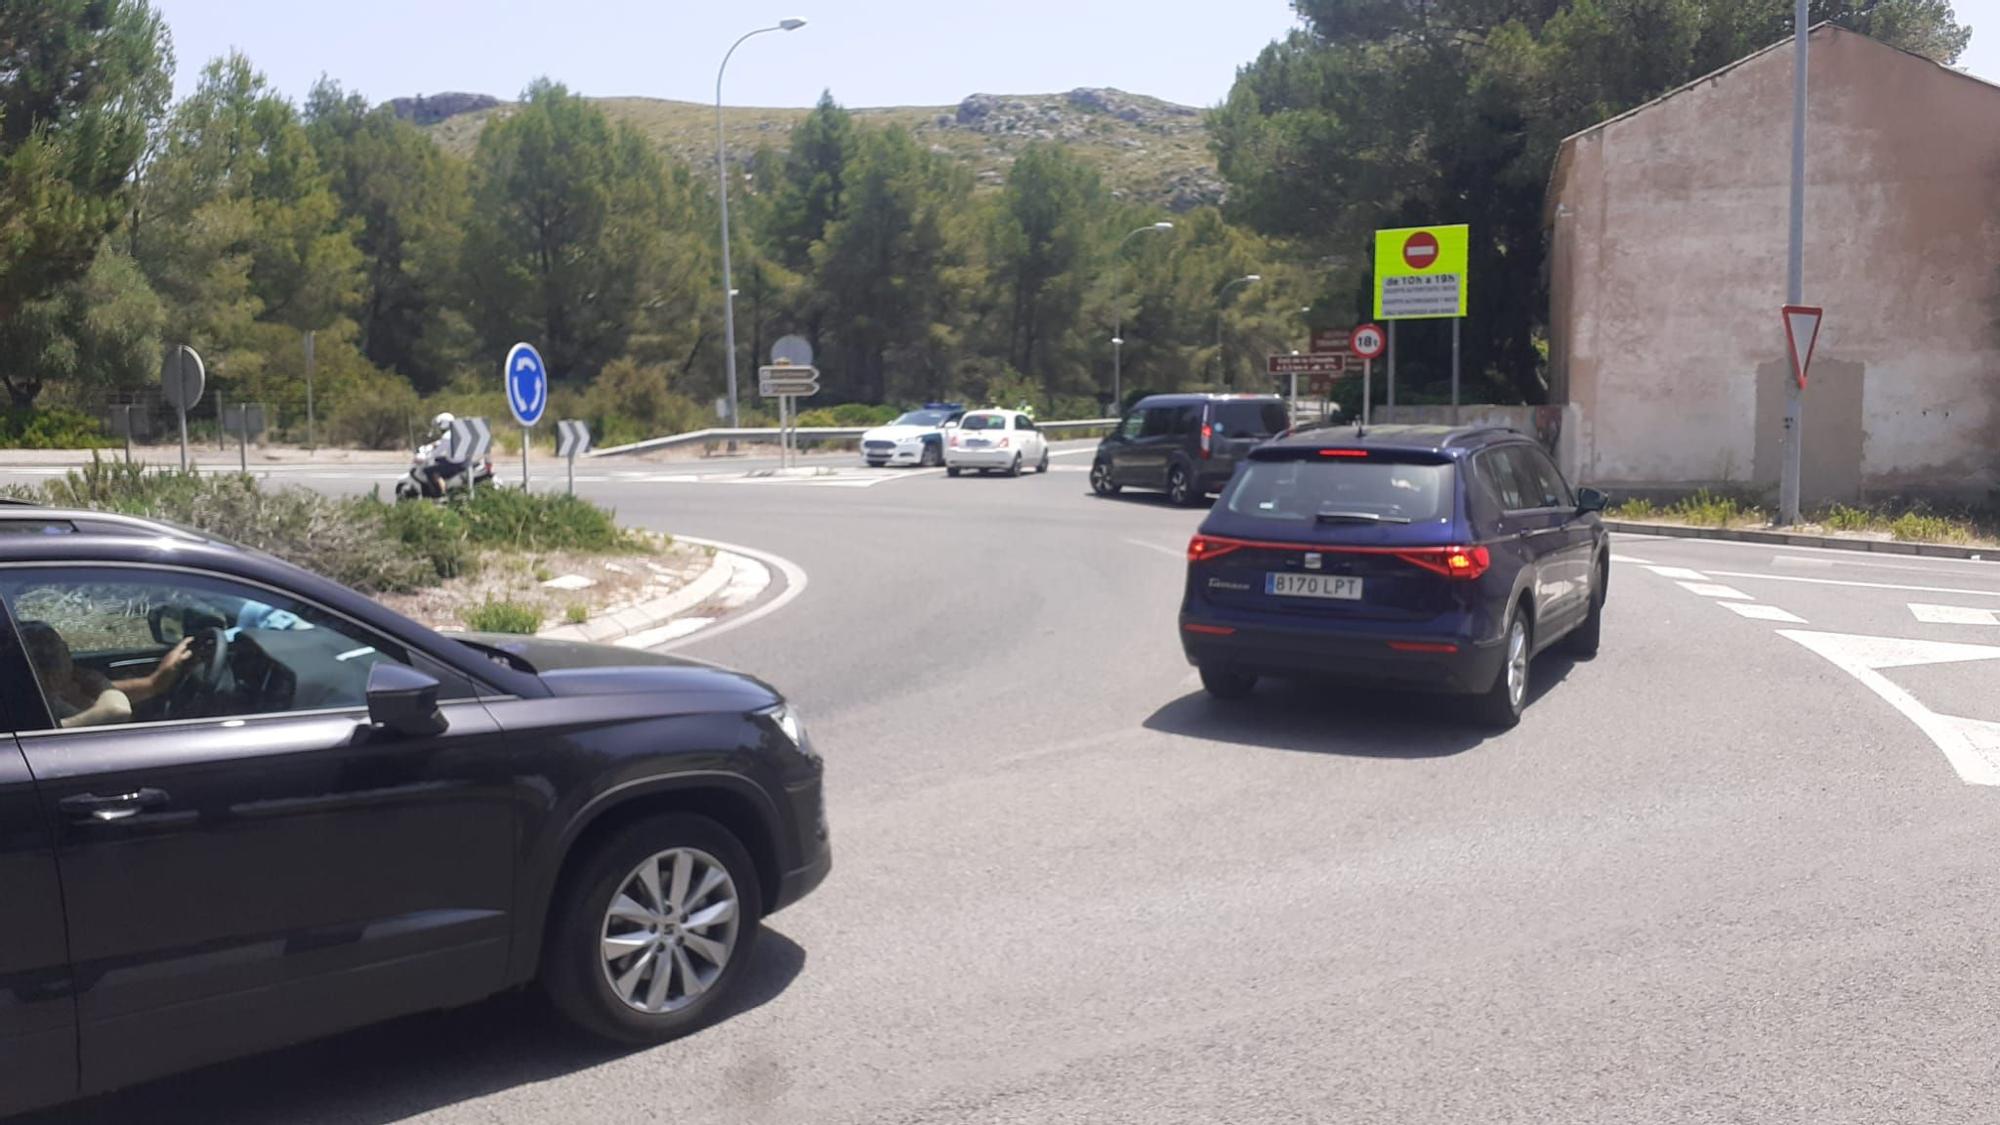 Empiezan las restricciones para llegar a Formentor: permiten el acceso en coche privado a cambio de una consumición en la playa